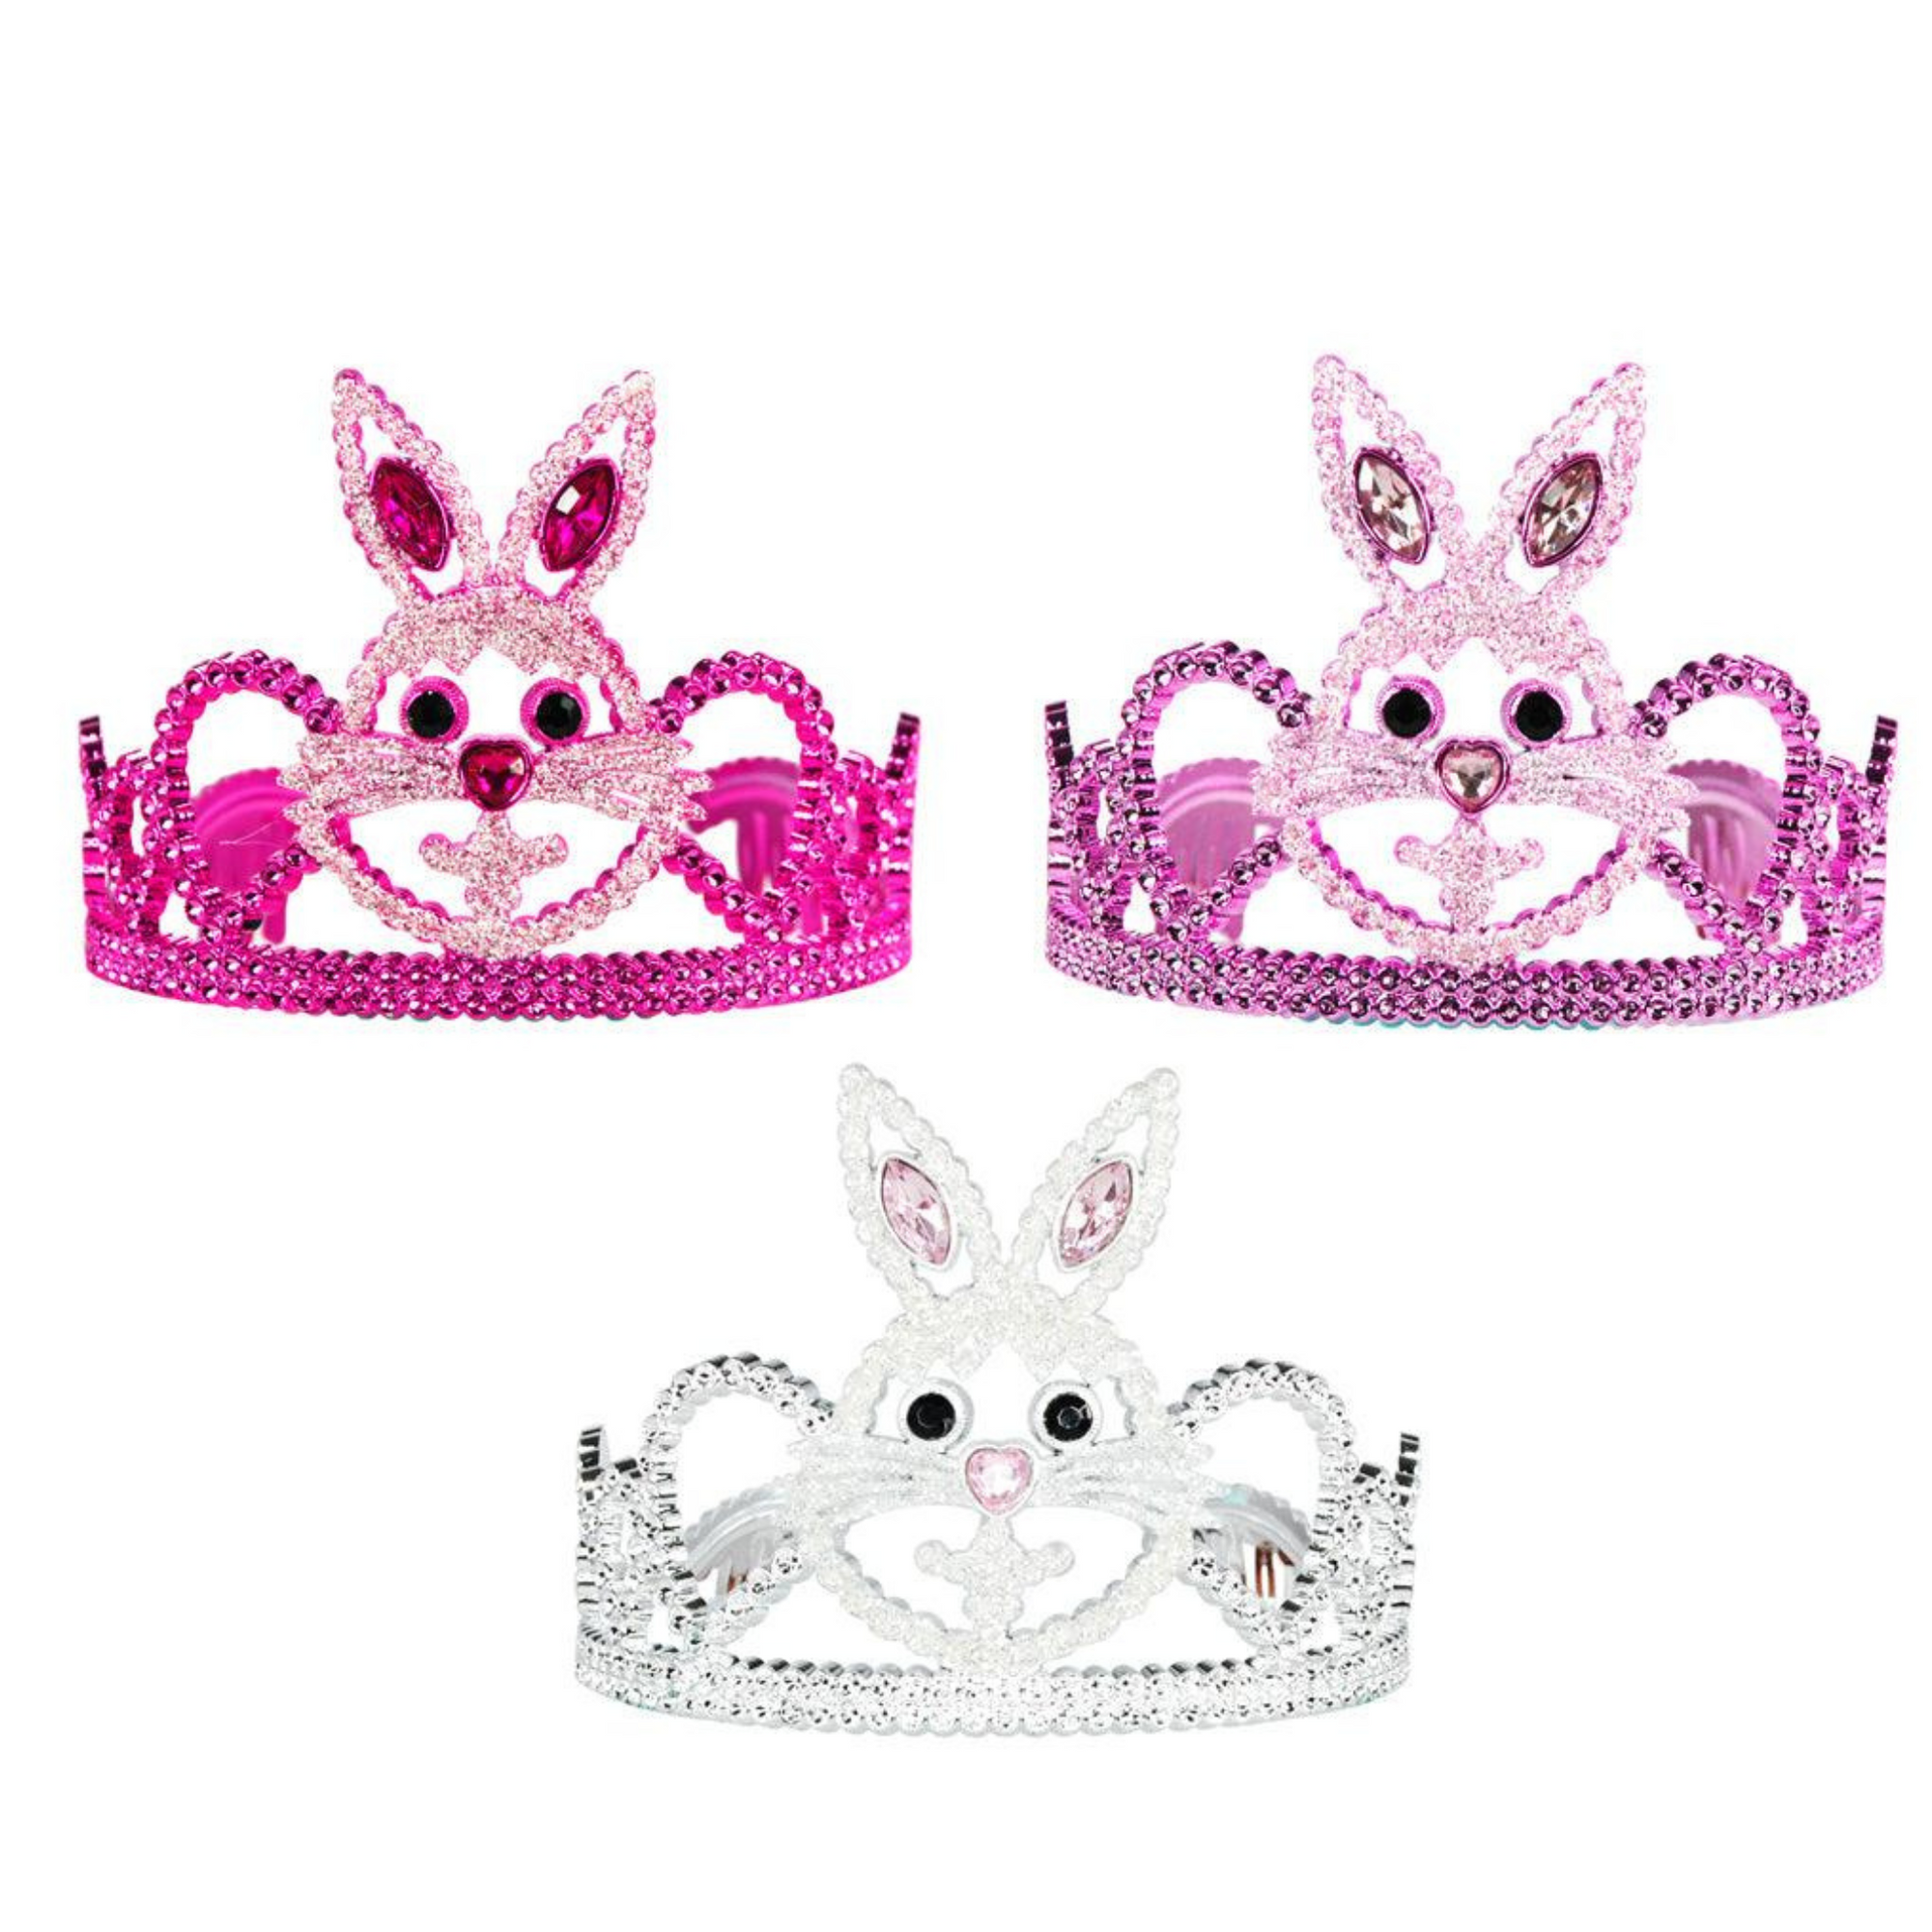 Hunny Bunny Crown